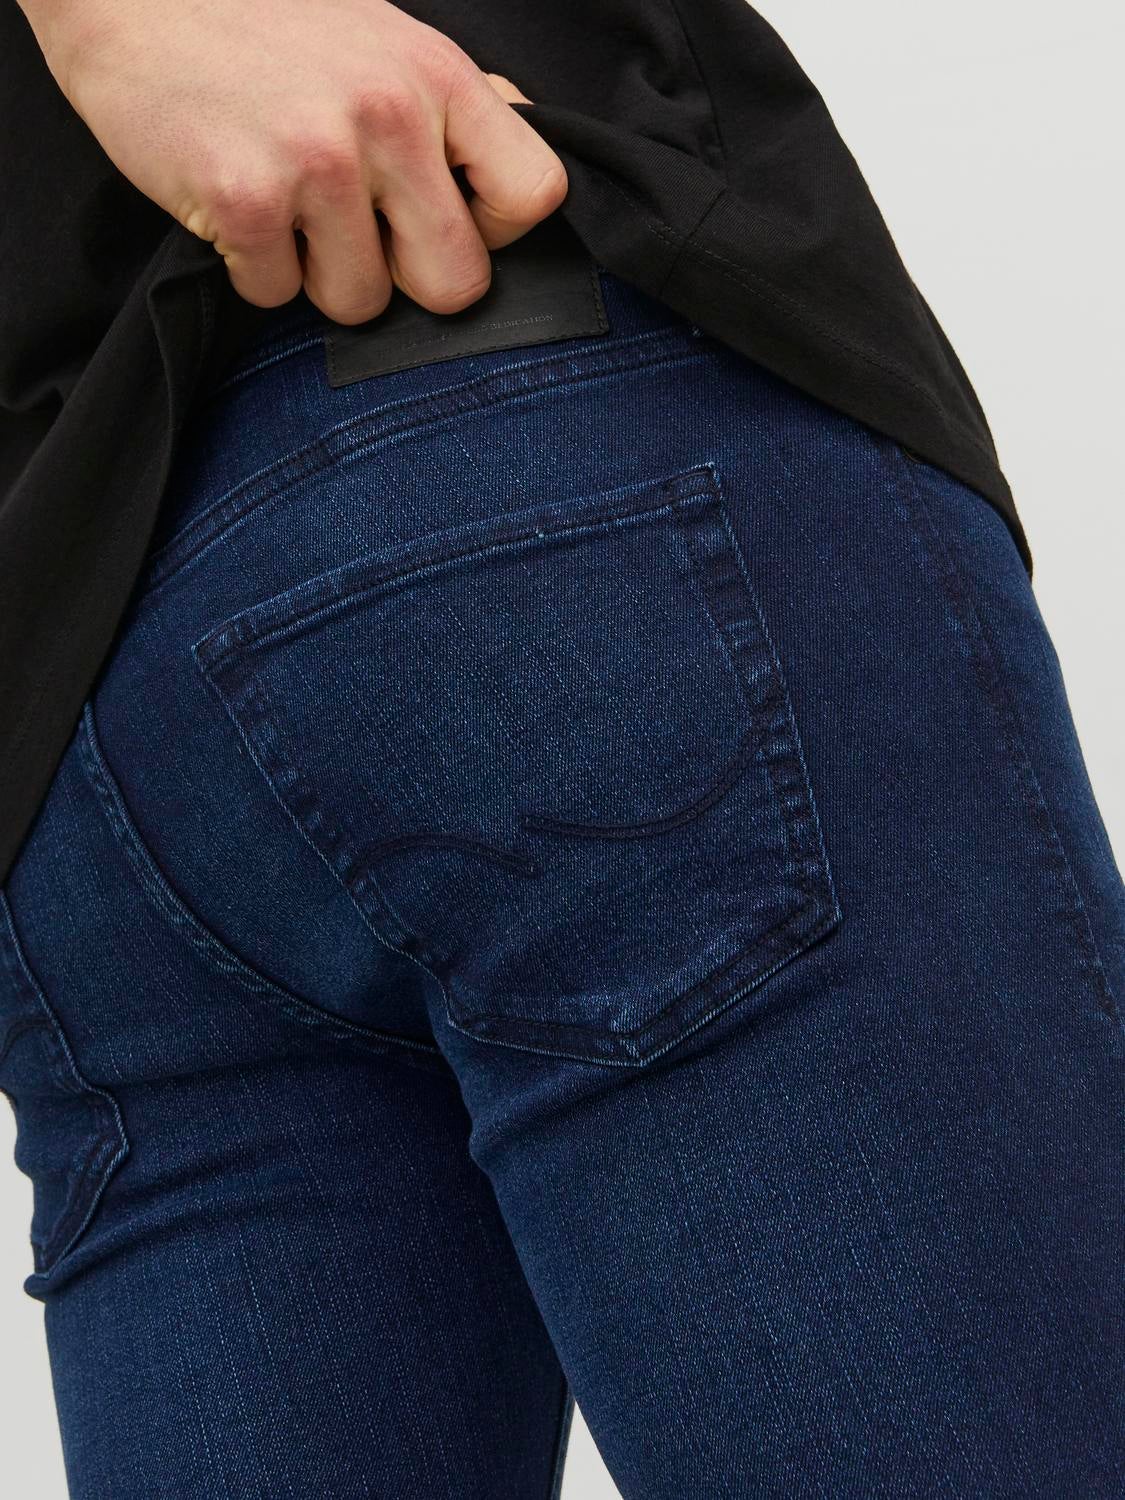 JJIGLENN JJORIGINAL MF 775 Slim fit jeans